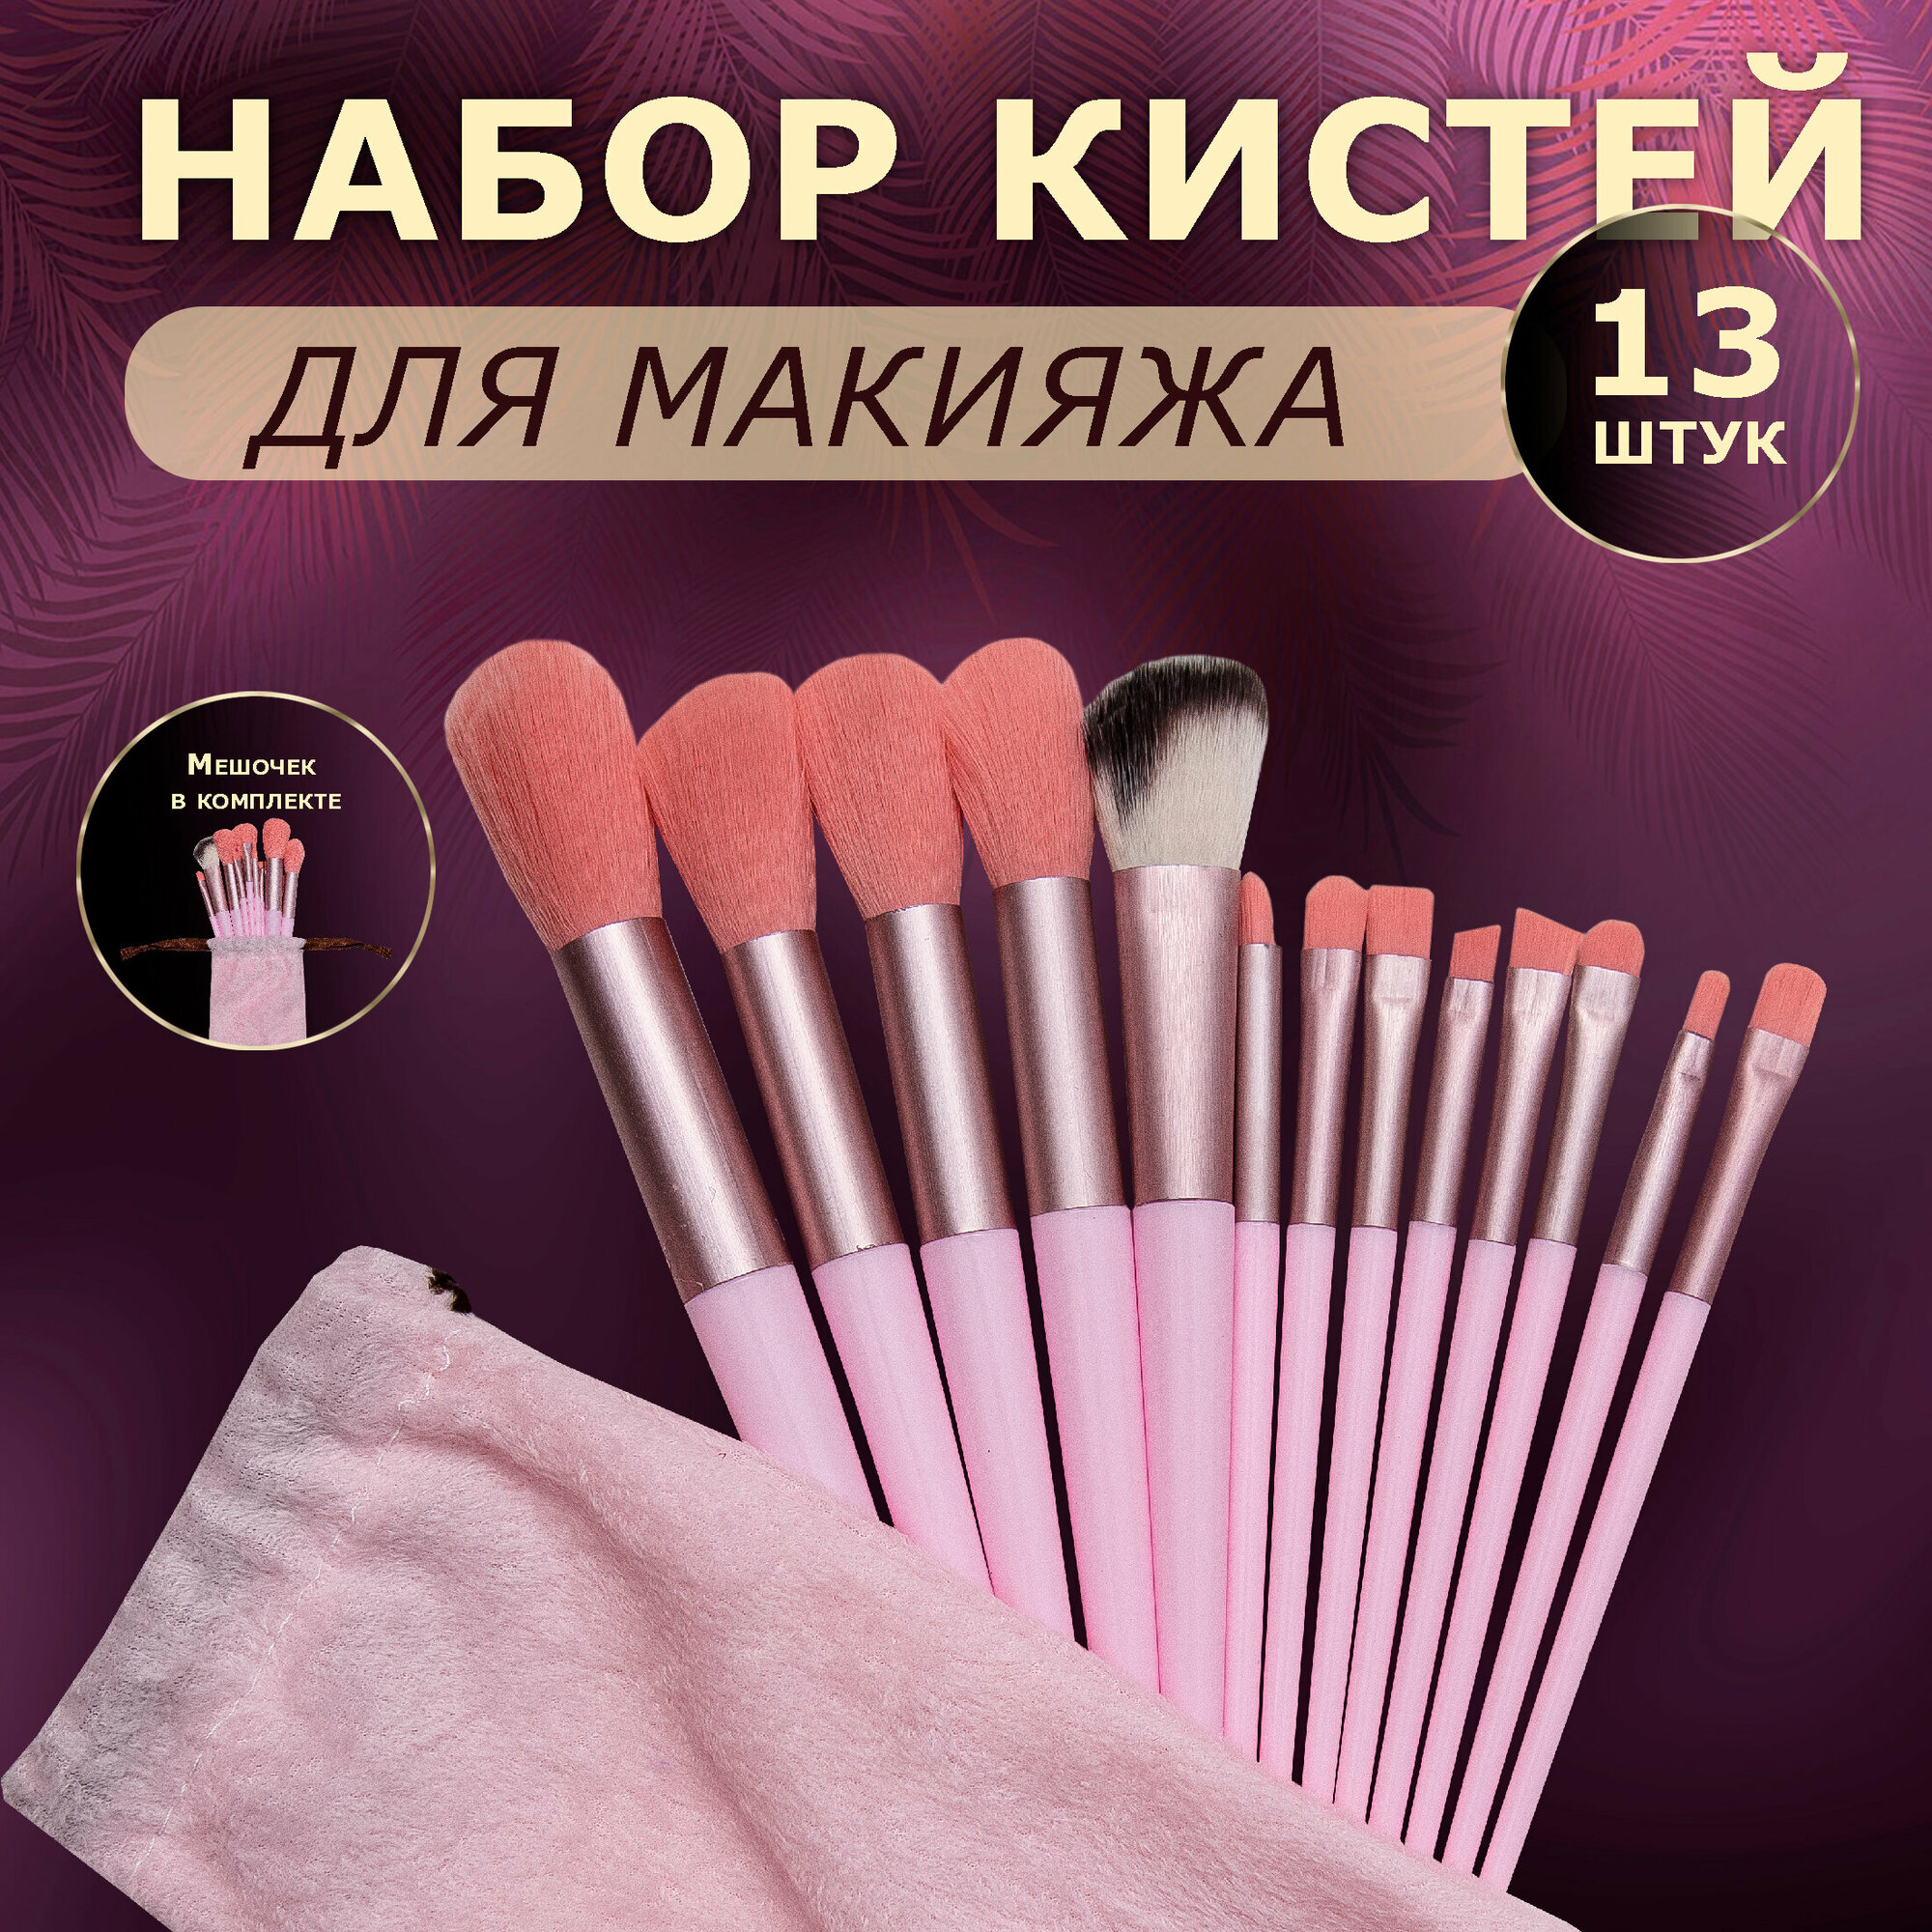 Набор кистей для макияжа 13 штук. Цвет розовый.